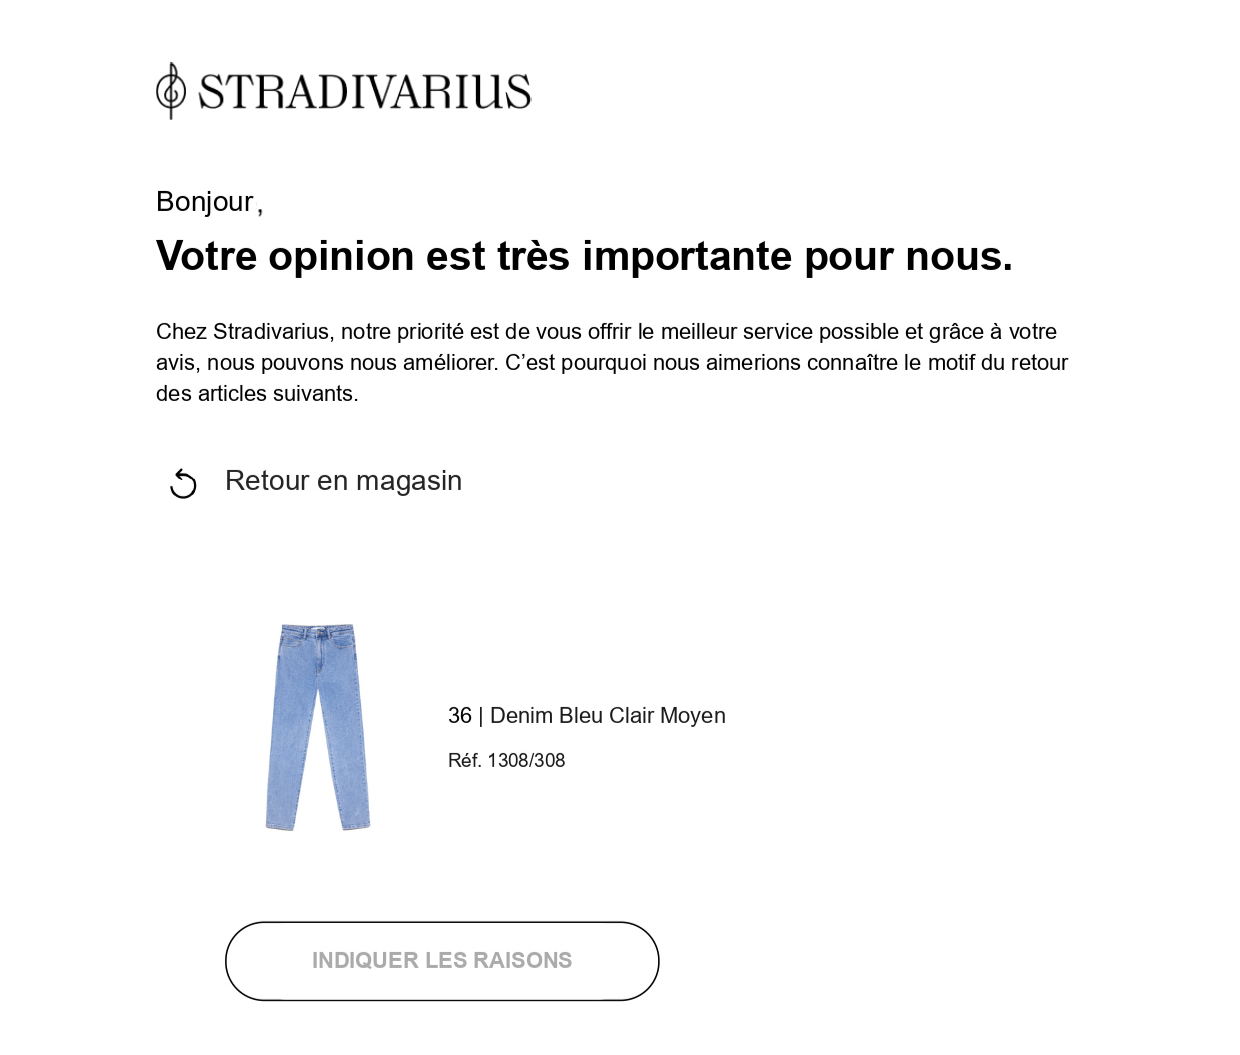 Exemple de questionnaire de satisfaction de Stradivarius